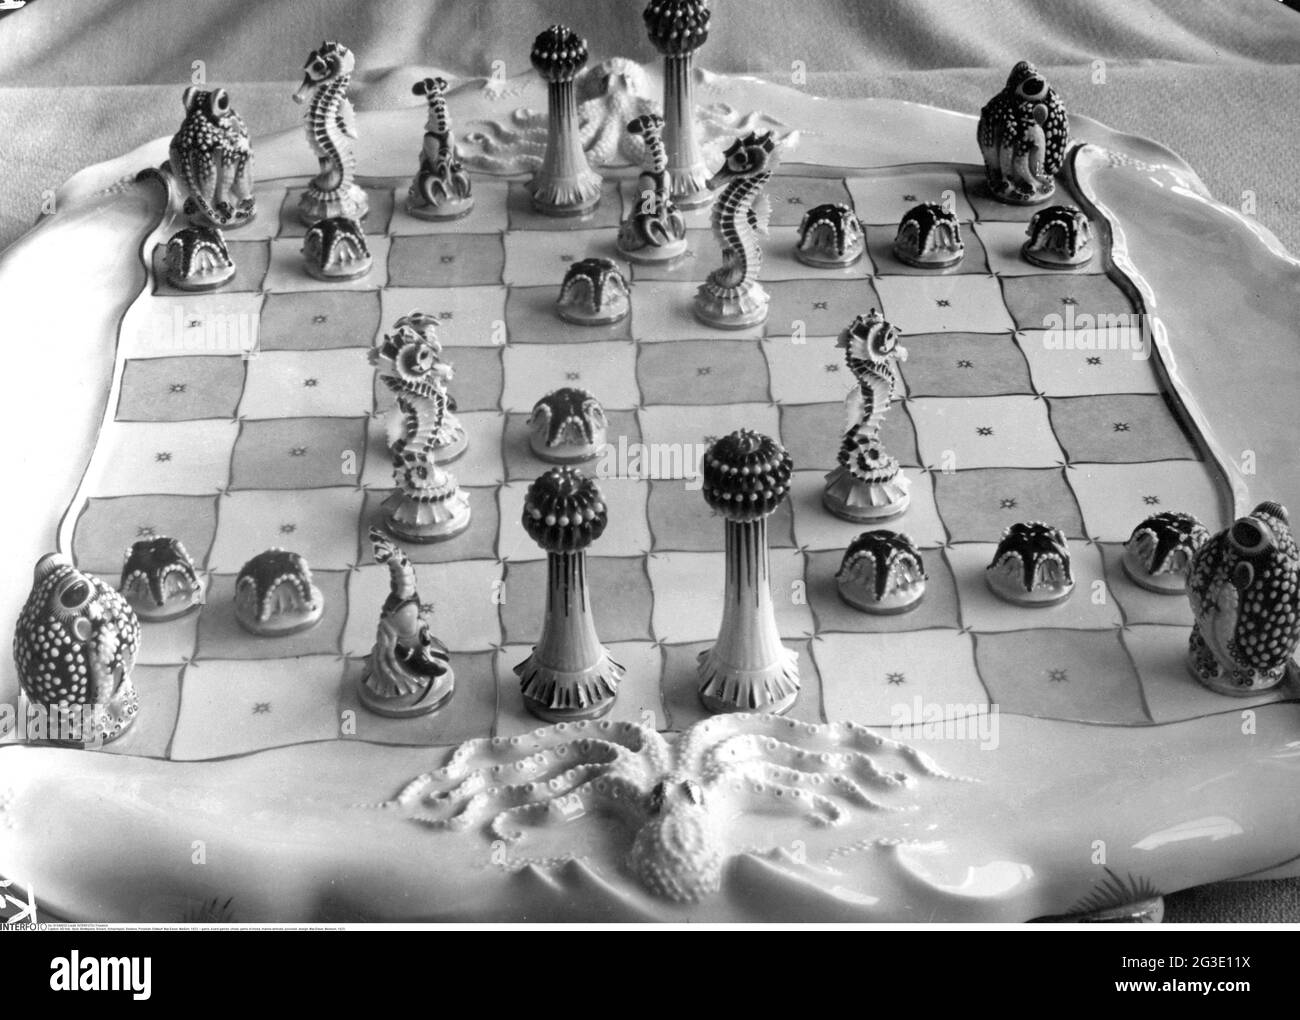 Spiel, Brettspiele, Schach, Schachspiel, Meerestiere, Porzellan, Design: Max Esser, Meissen, 1923, ZUSÄTZLICHE-RIGHTS-CLEARANCE-INFO-NOT-AVAILABLE Stockfoto